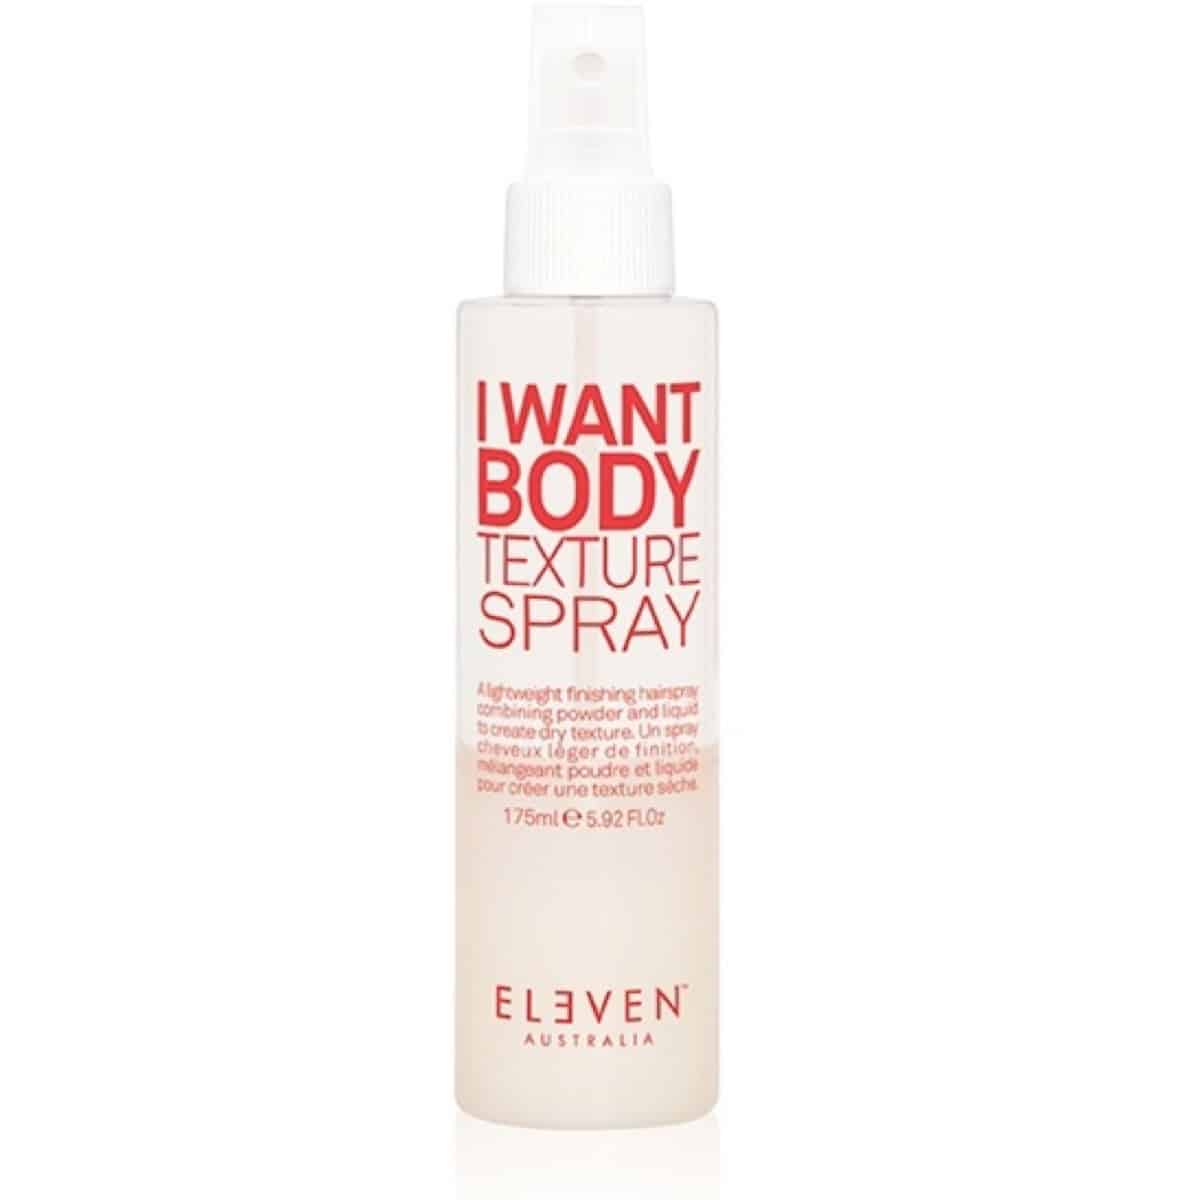 Omslagsbild för “Eleven I want body texture spray”